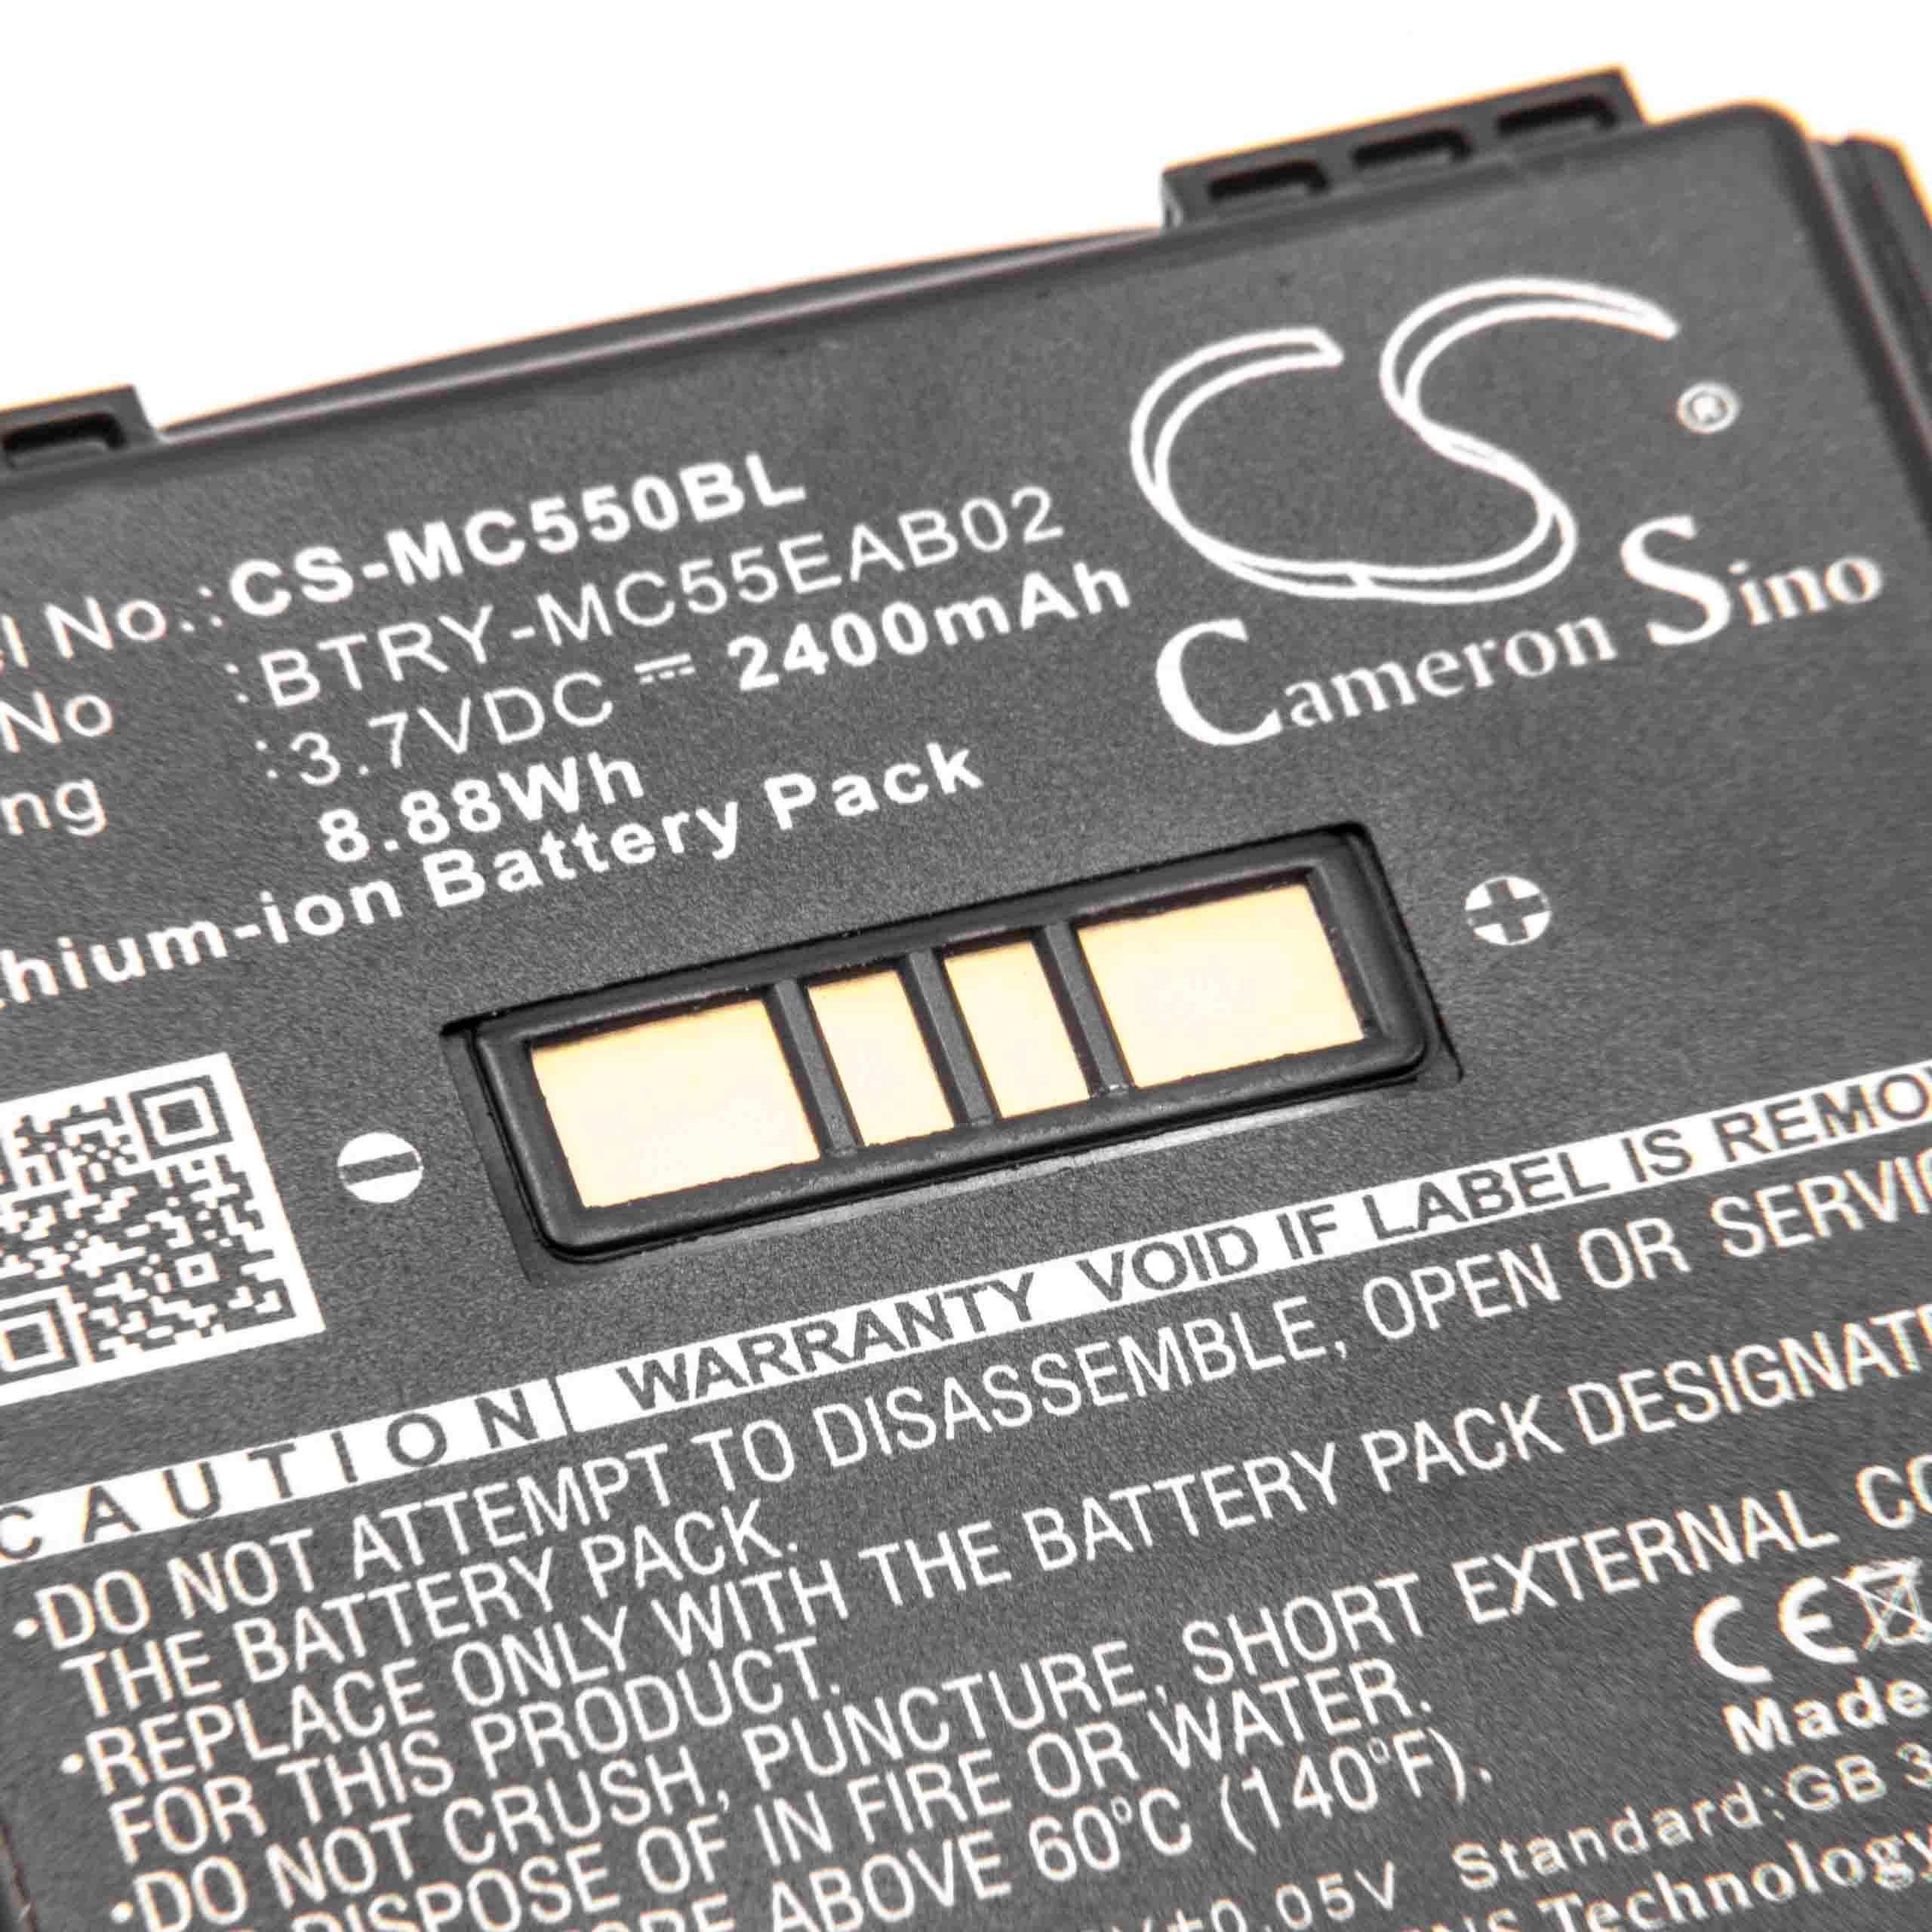 Batterie remplace Symbol BTRY-MC55EAB02, 82-111094-01 pour ordinateur mobile PDA scanner - 2400mAh 3,7V Li-ion